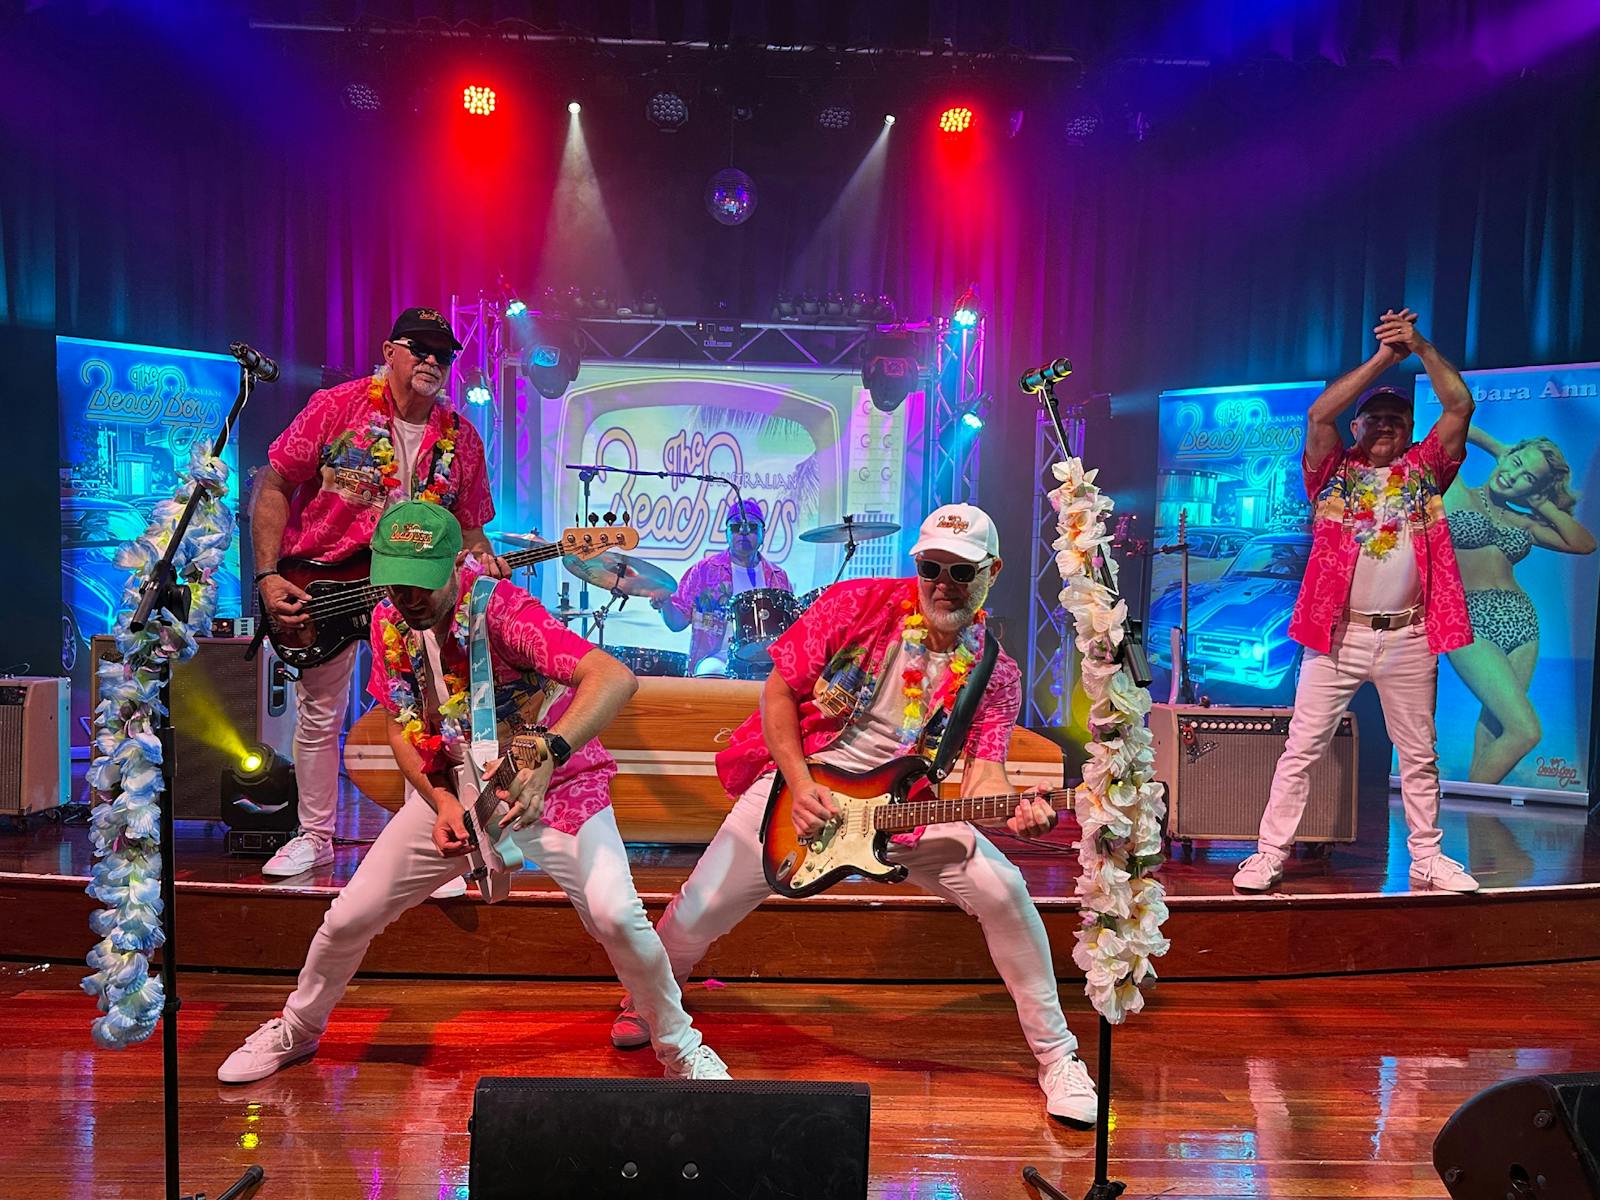 Image for The Australian Beach Boys Show